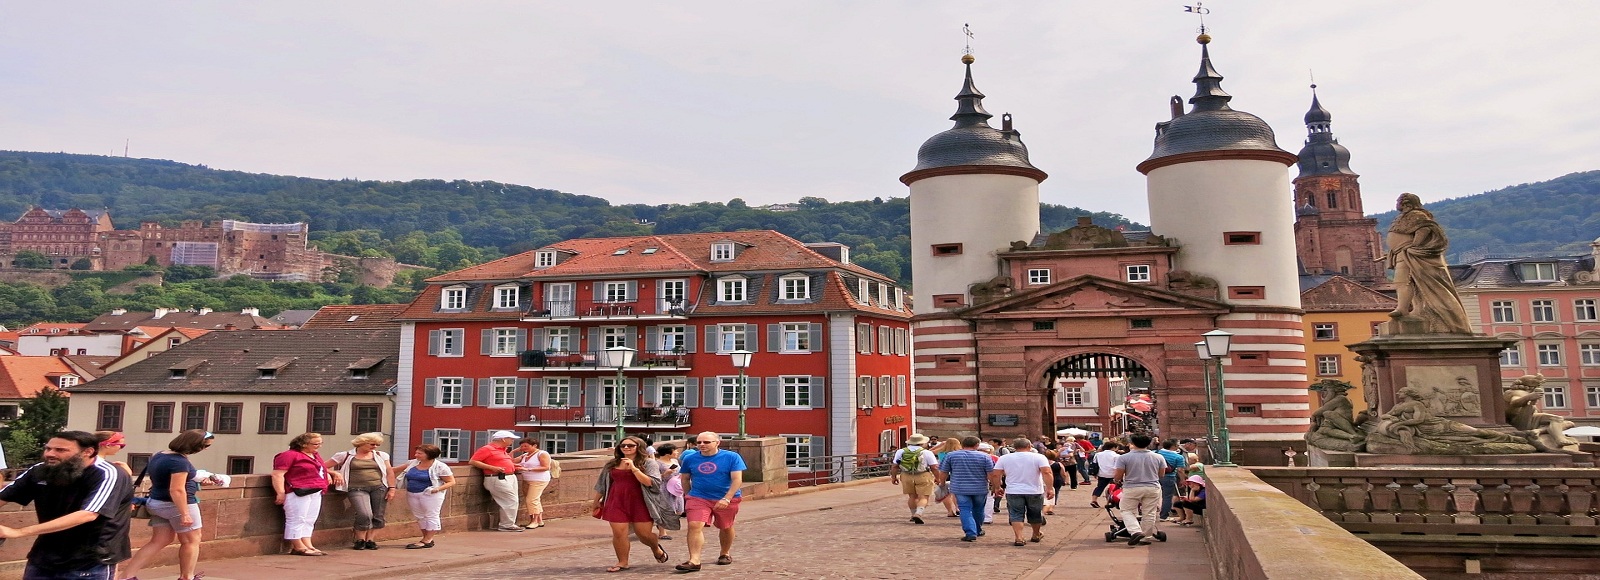 Transfer Offers in Heidelberg. Low Cost Transfers in  Heidelberg 